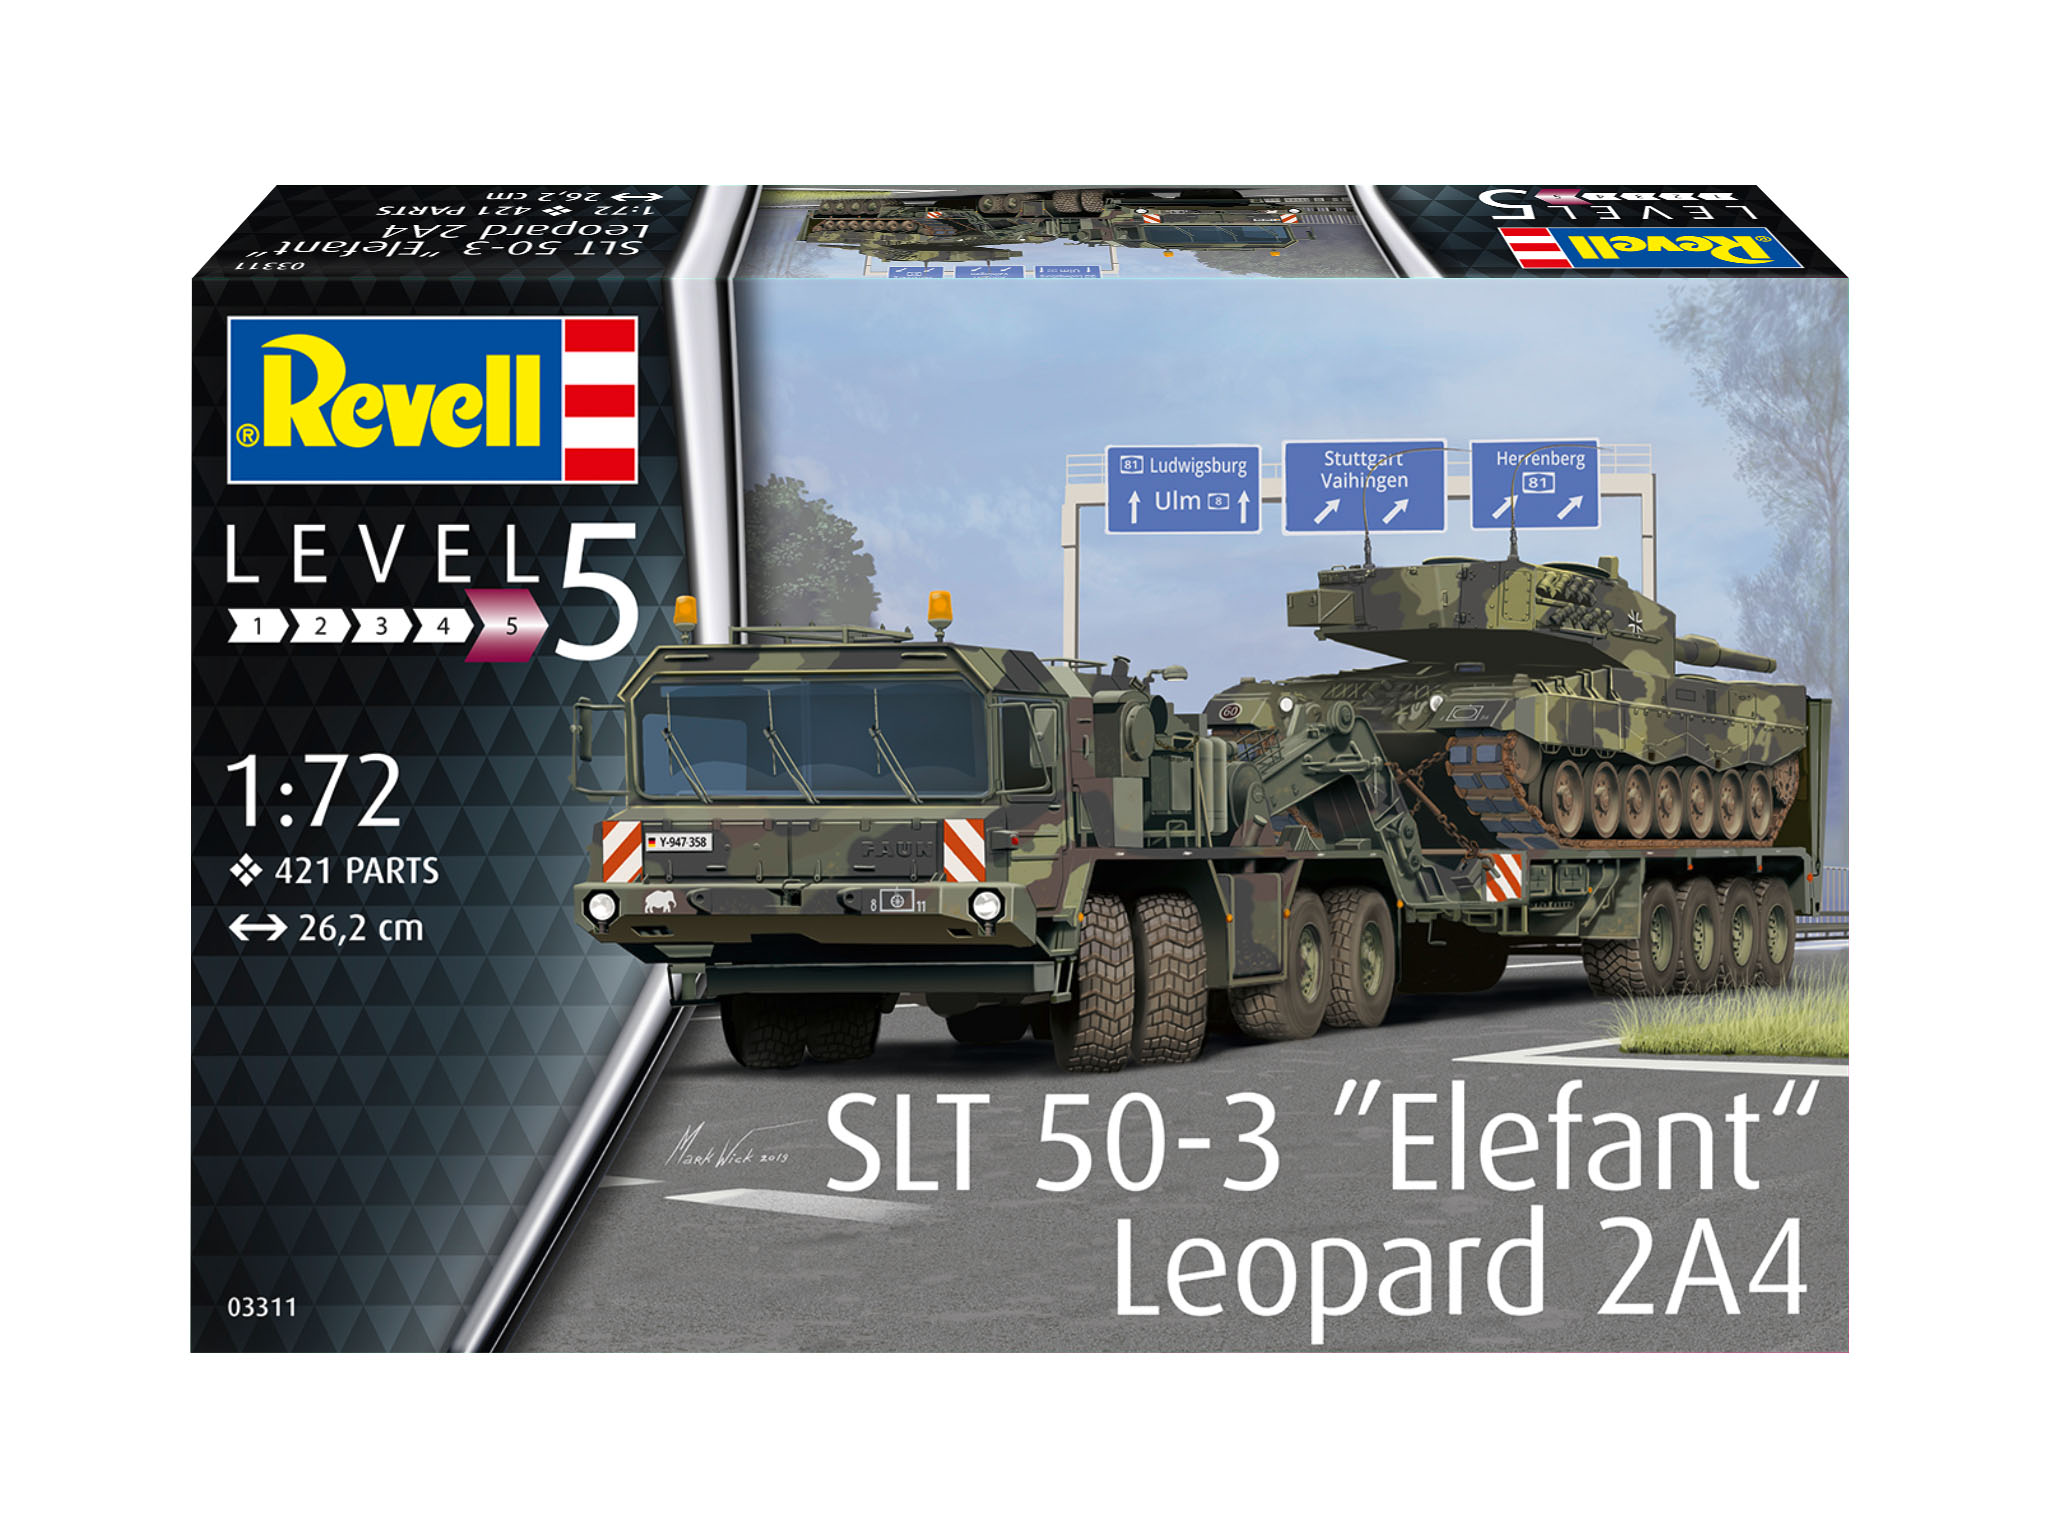 Mehrfarbig Panzer, REVELL Leopard 2A4 50-3 + SLT \